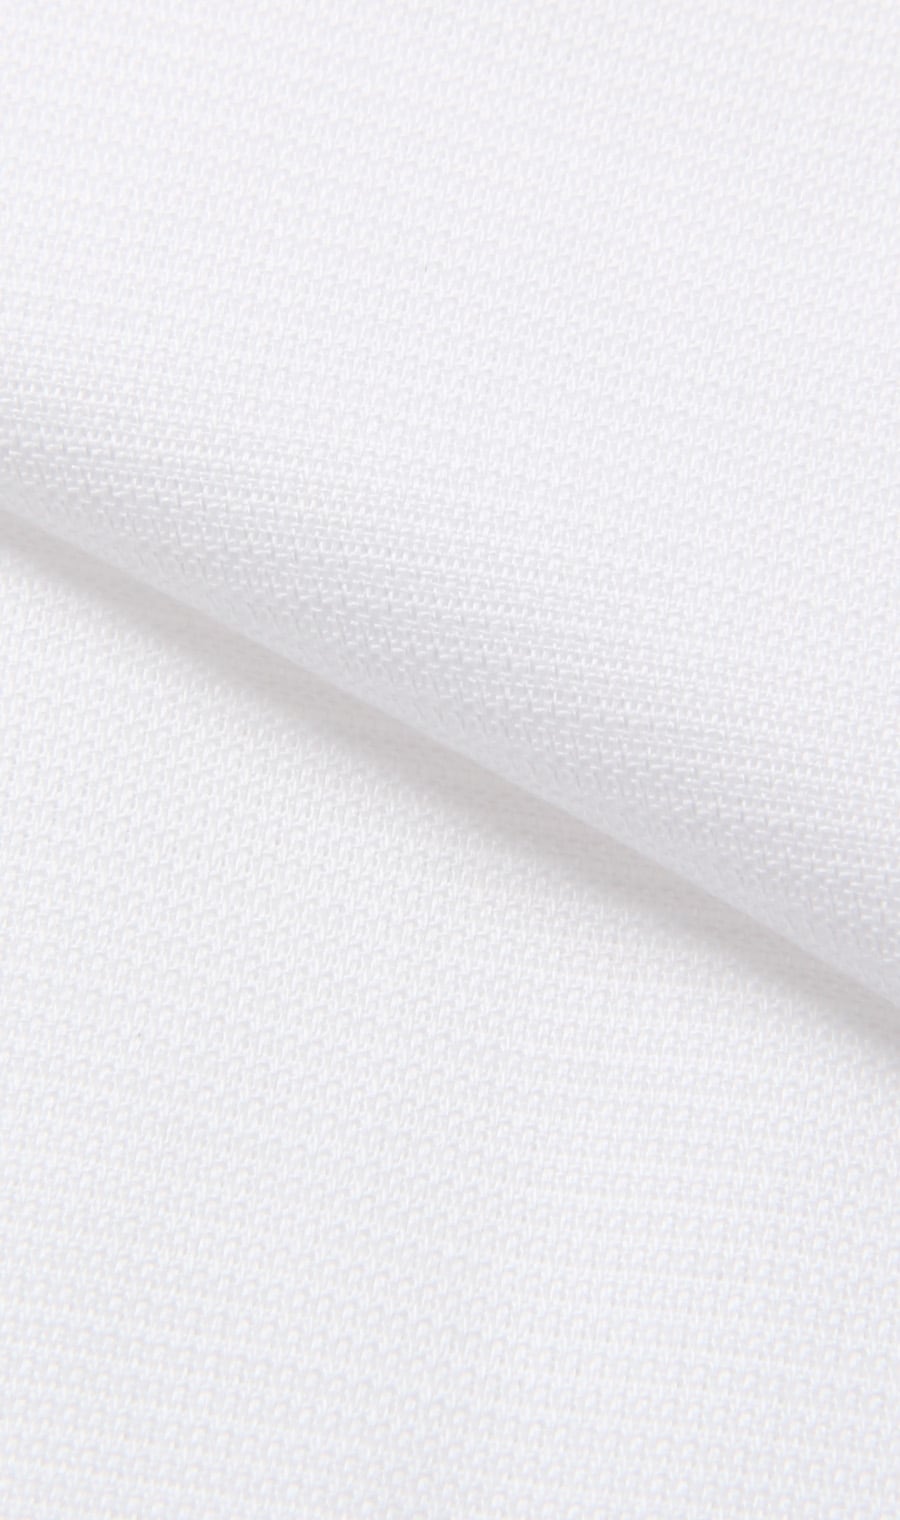 1617円 ブランド激安セール会場 盛夏用 ホワイト系 レギュラーカラースタンダードワイシャツ Savile Row ビジネスシャツ メンズ シャツ 半袖 ワイシャツ 形態安定 標準体 104